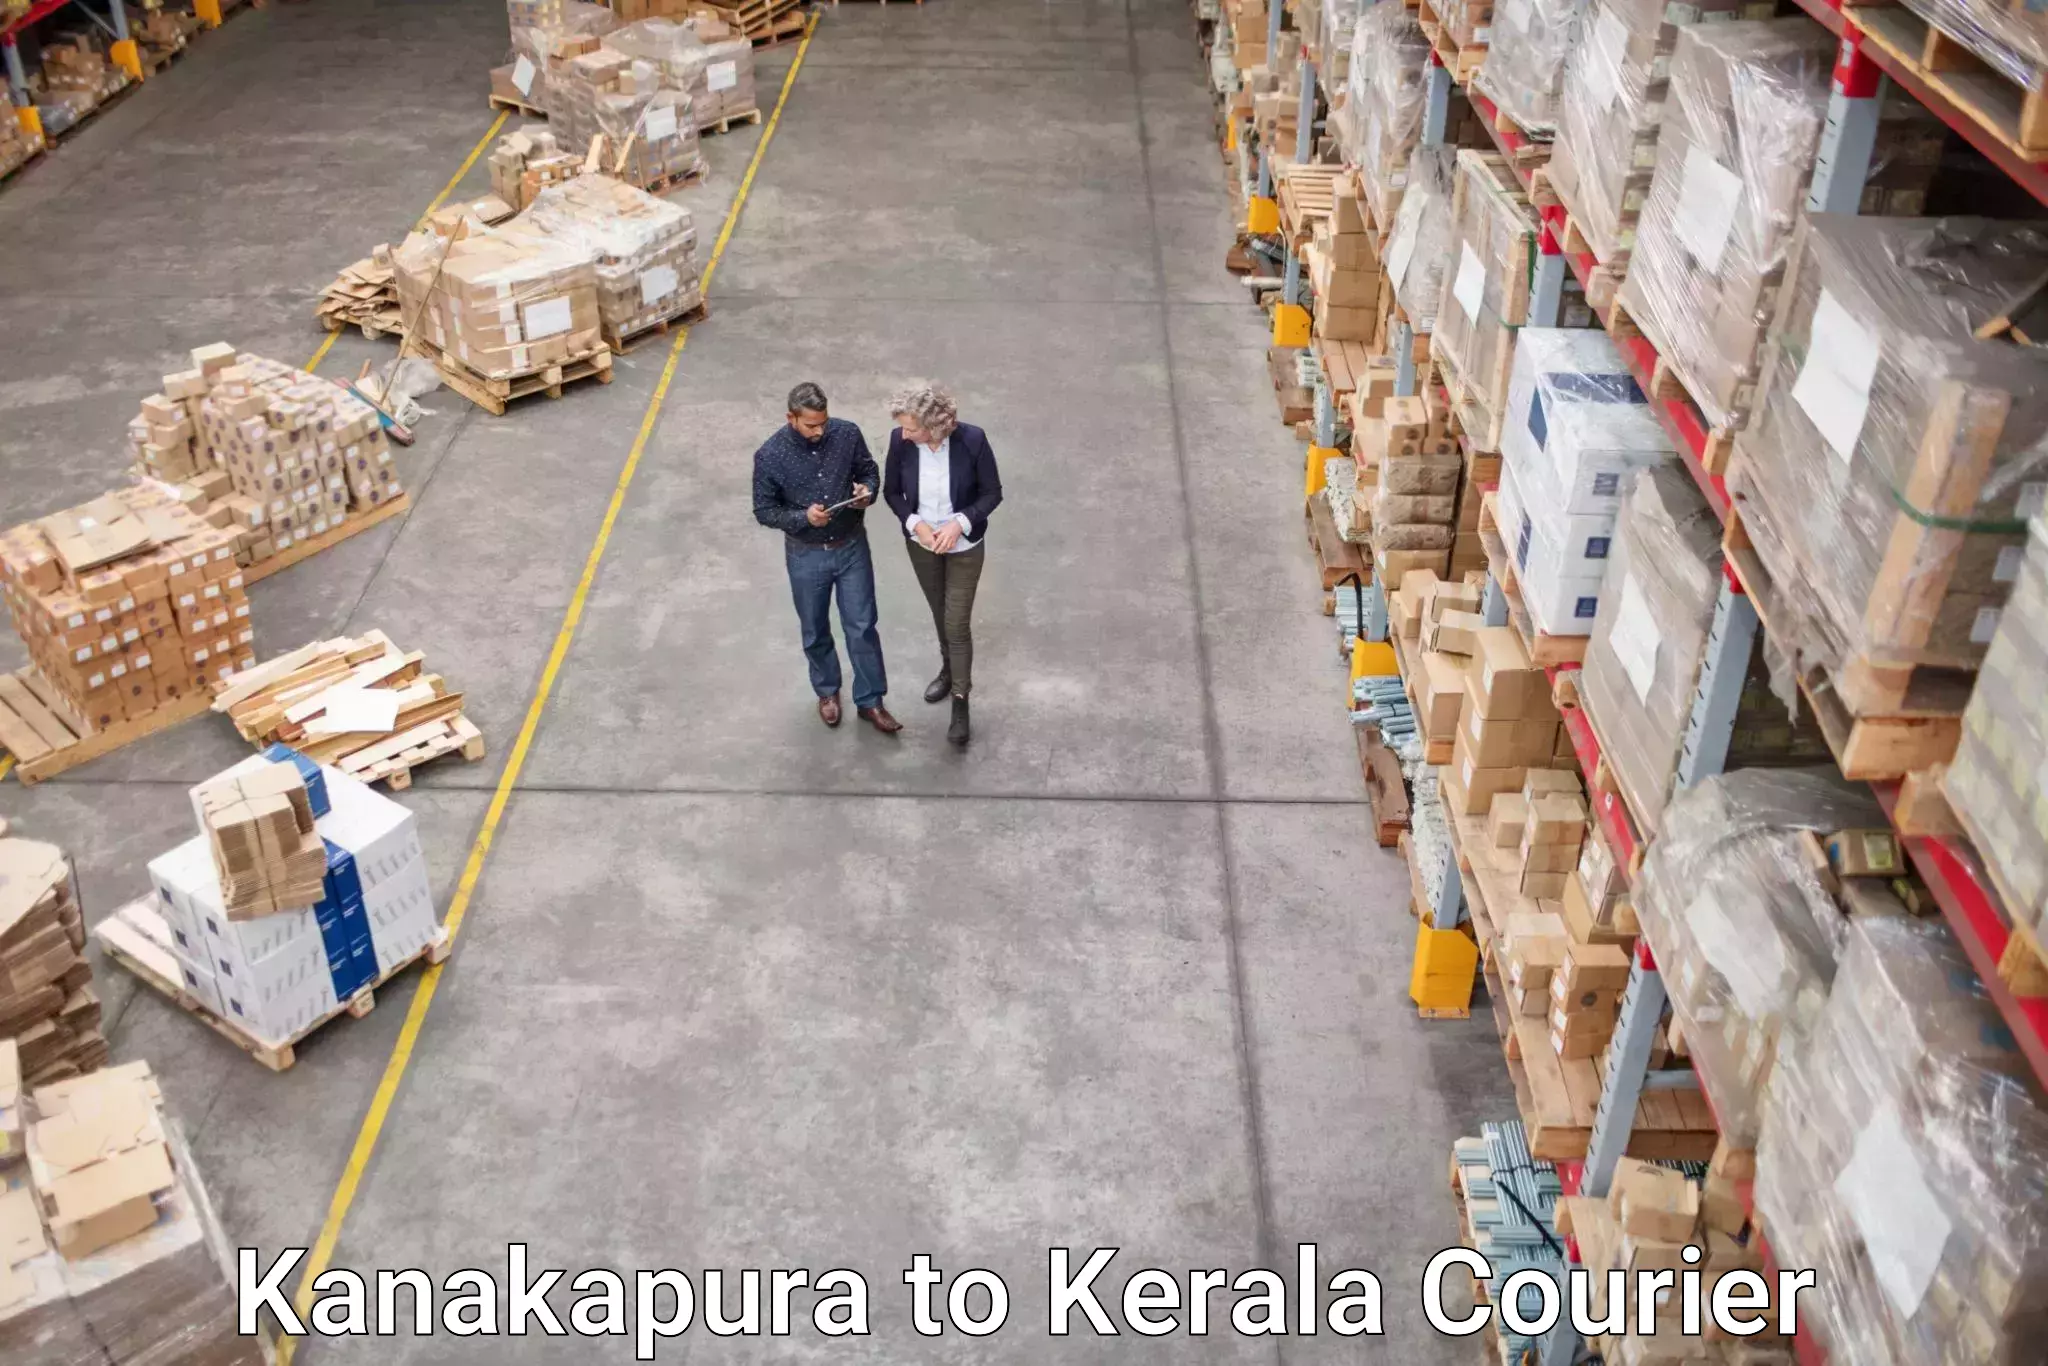 Ground shipping Kanakapura to Kerala